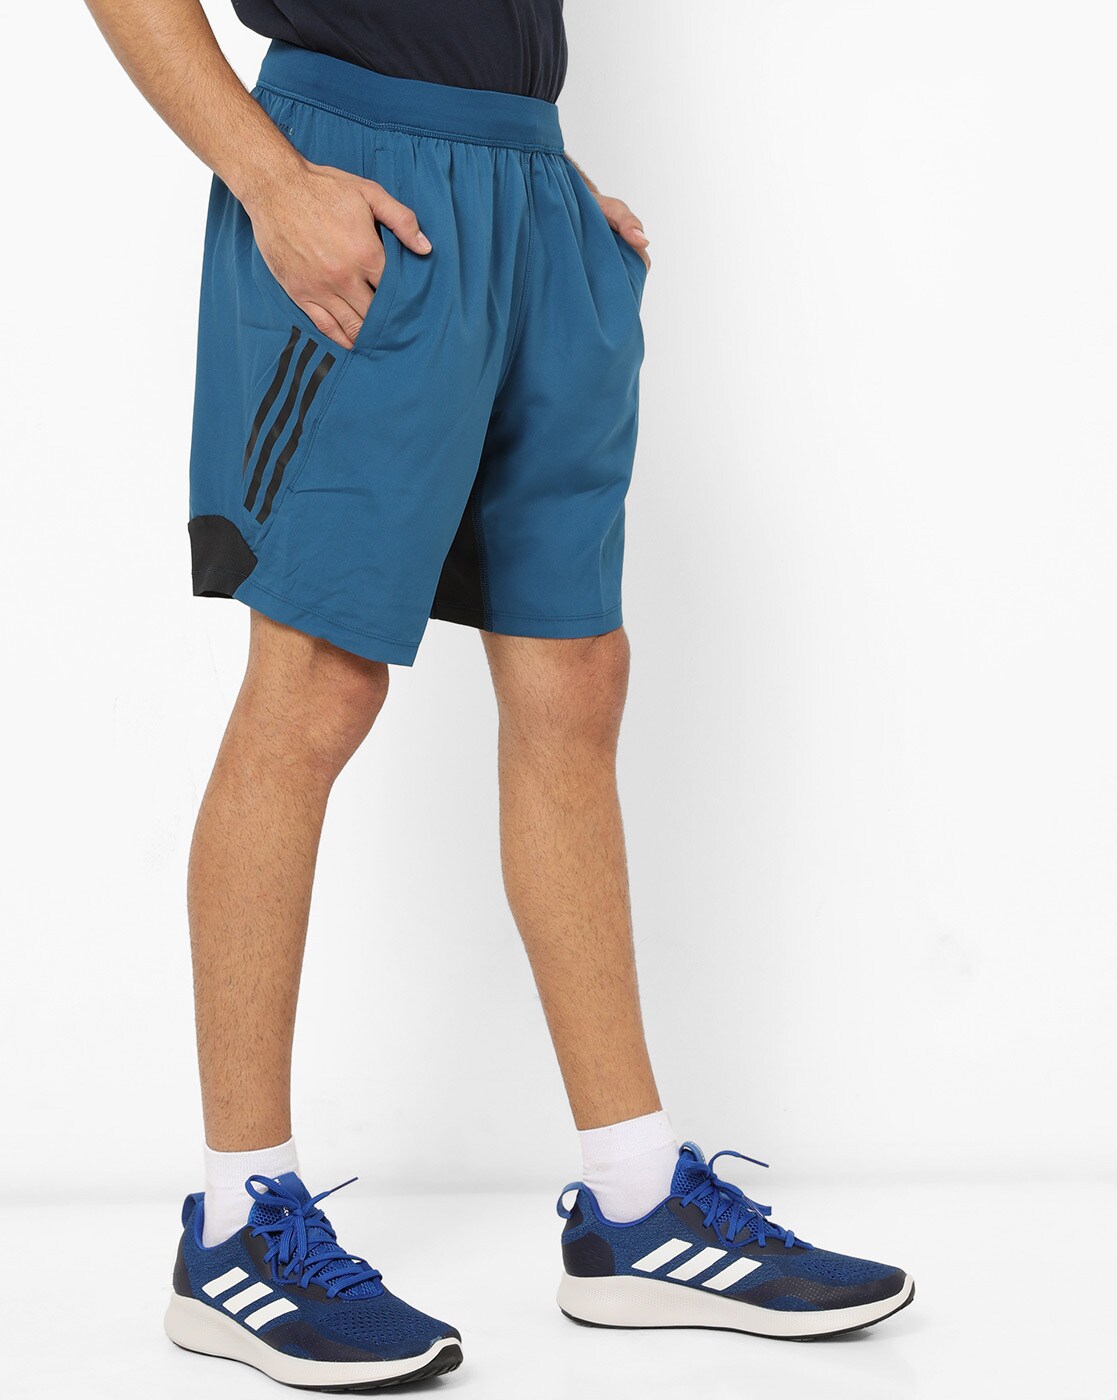 adidas shorts blue mens